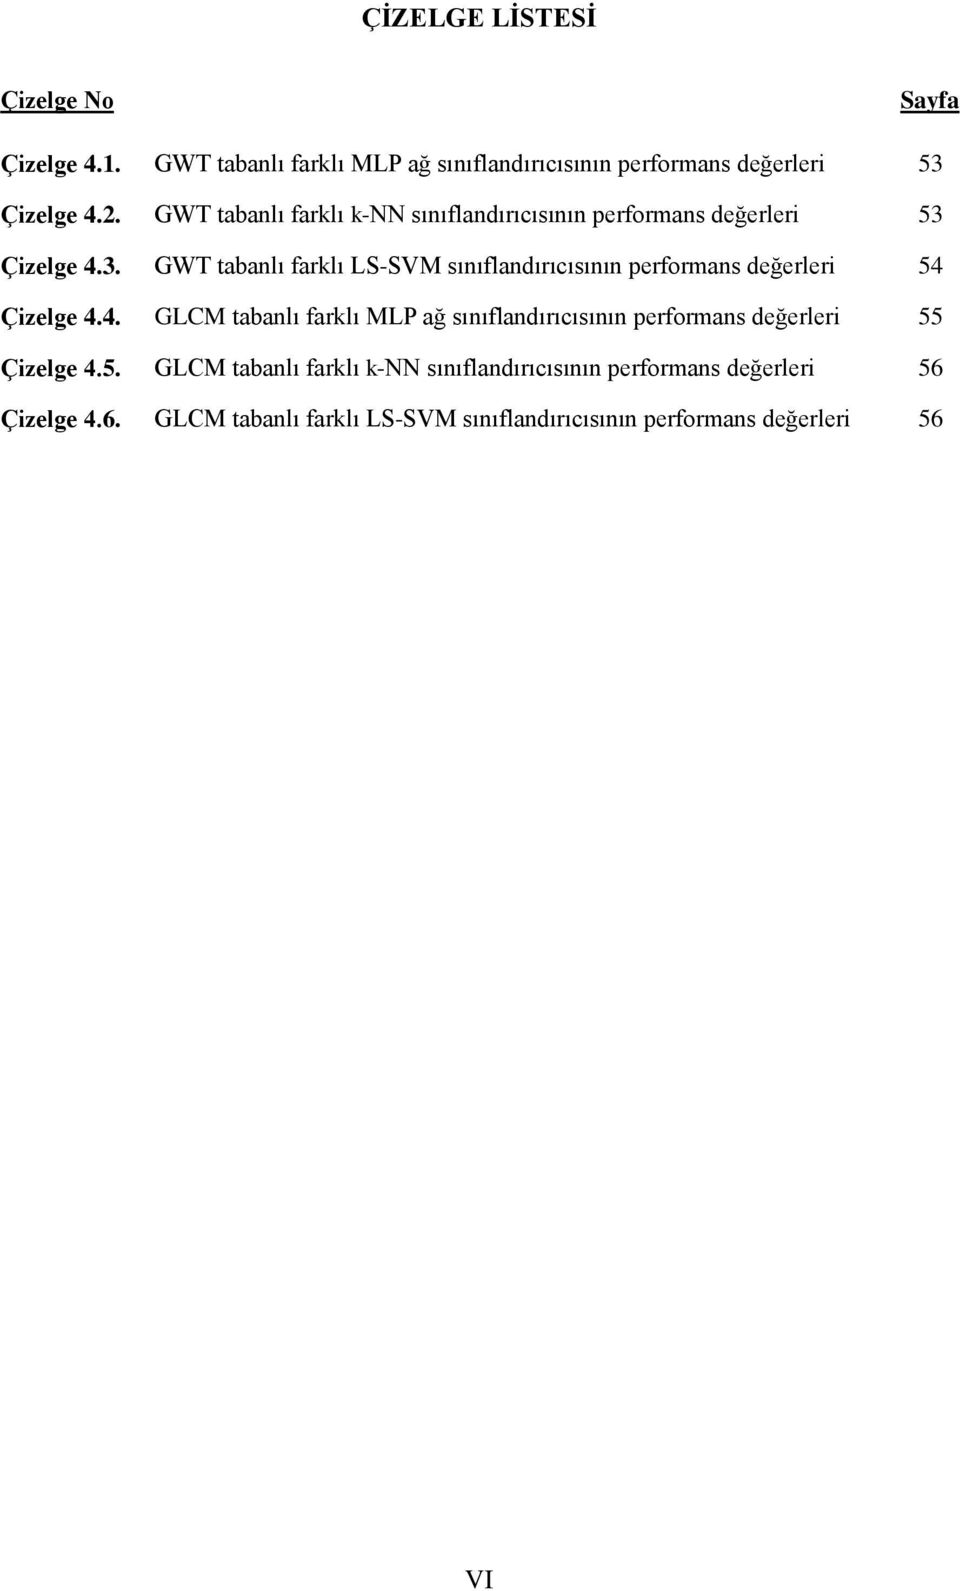 Çzelge 4.3. GWT tabanlı farklı LS-SVM sınıflandırıcısının performans değerler 54 Çzelge 4.4. GLCM tabanlı farklı MLP ağ sınıflandırıcısının performans değerler 55 Çzelge 4.